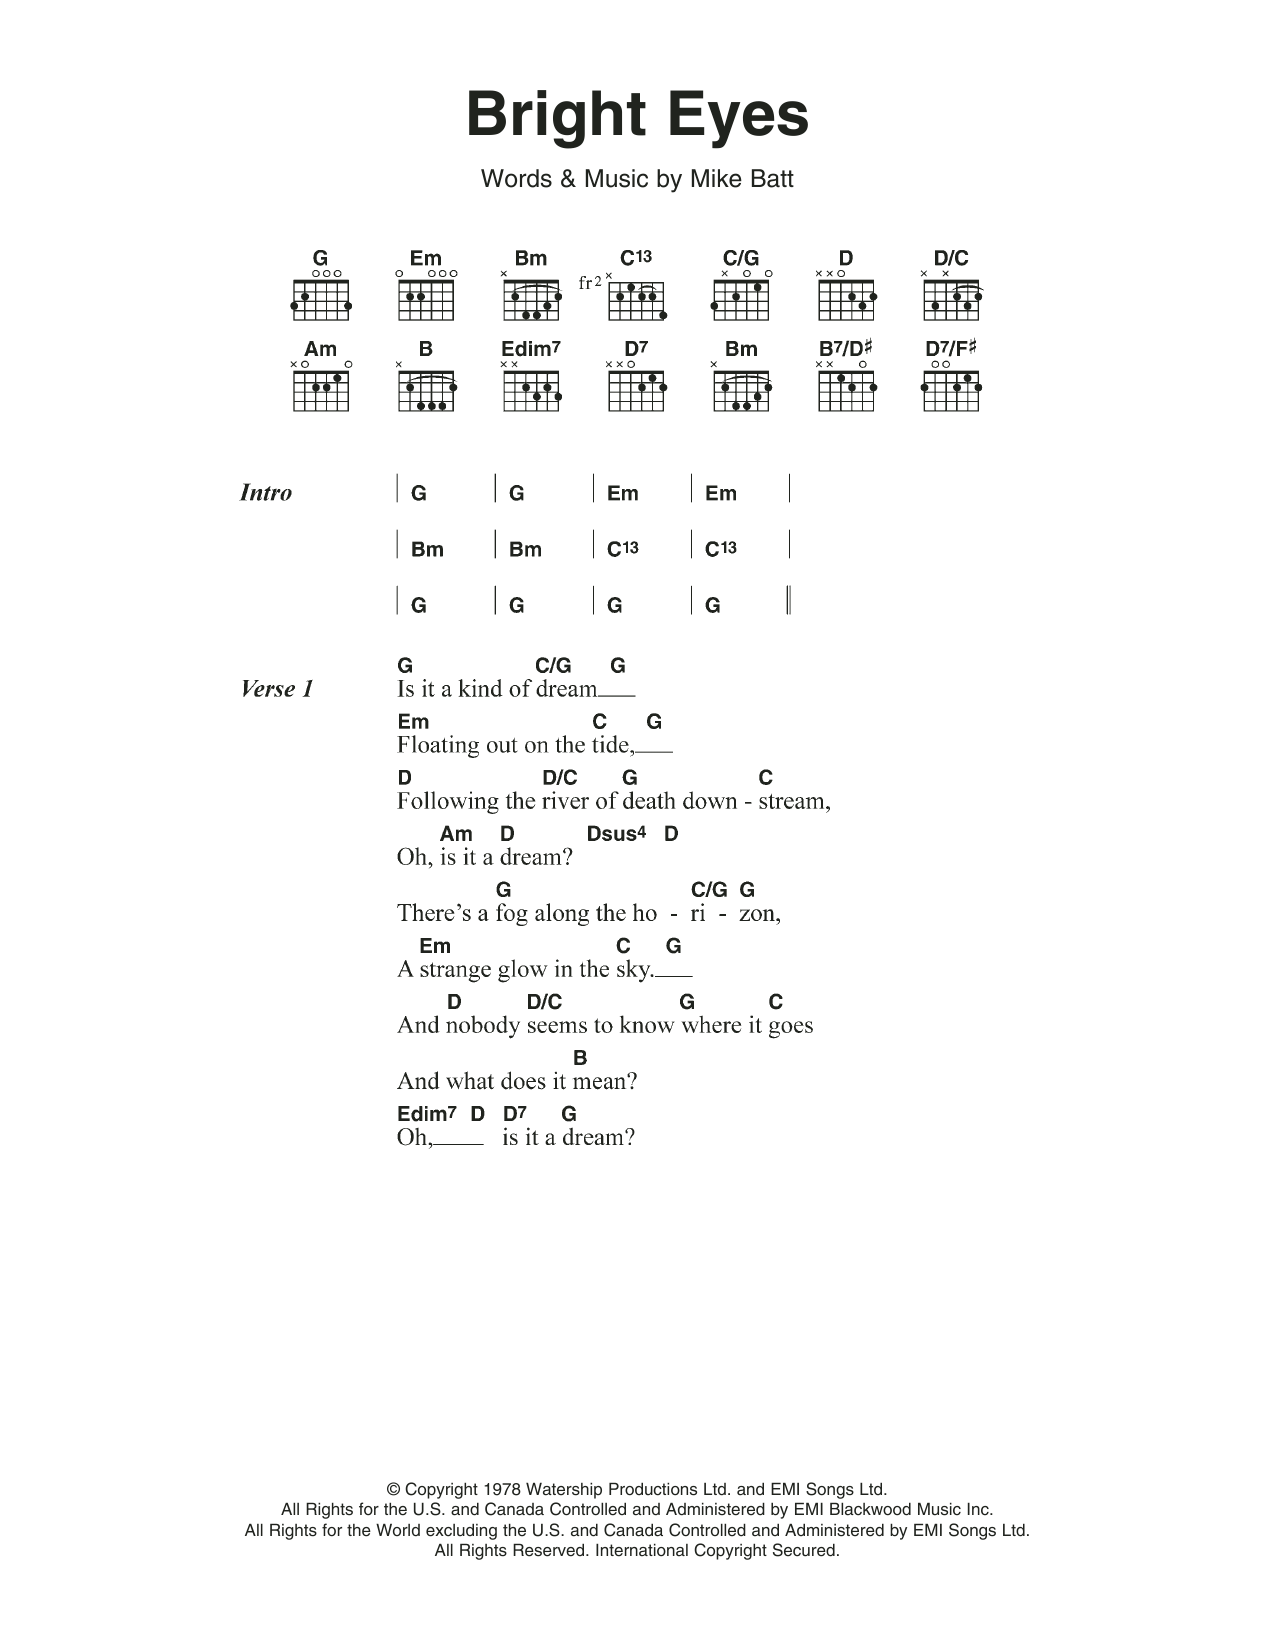 Art Garfunkel Bright Eyes Sheet Music Notes & Chords for Lyrics & Chords - Download or Print PDF